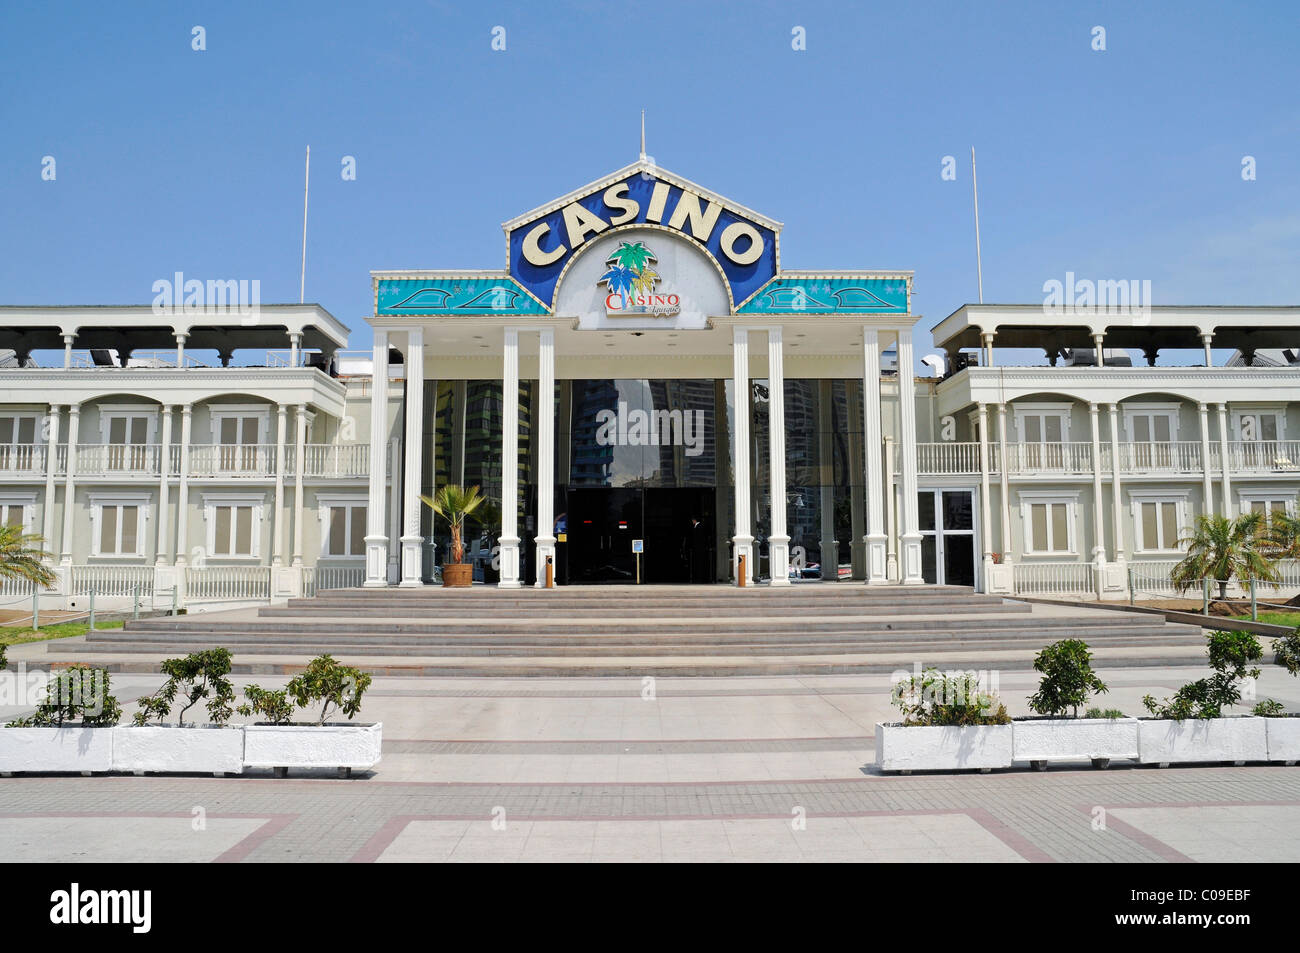 Domine su Casino Chile En Linea en 5 minutos al día